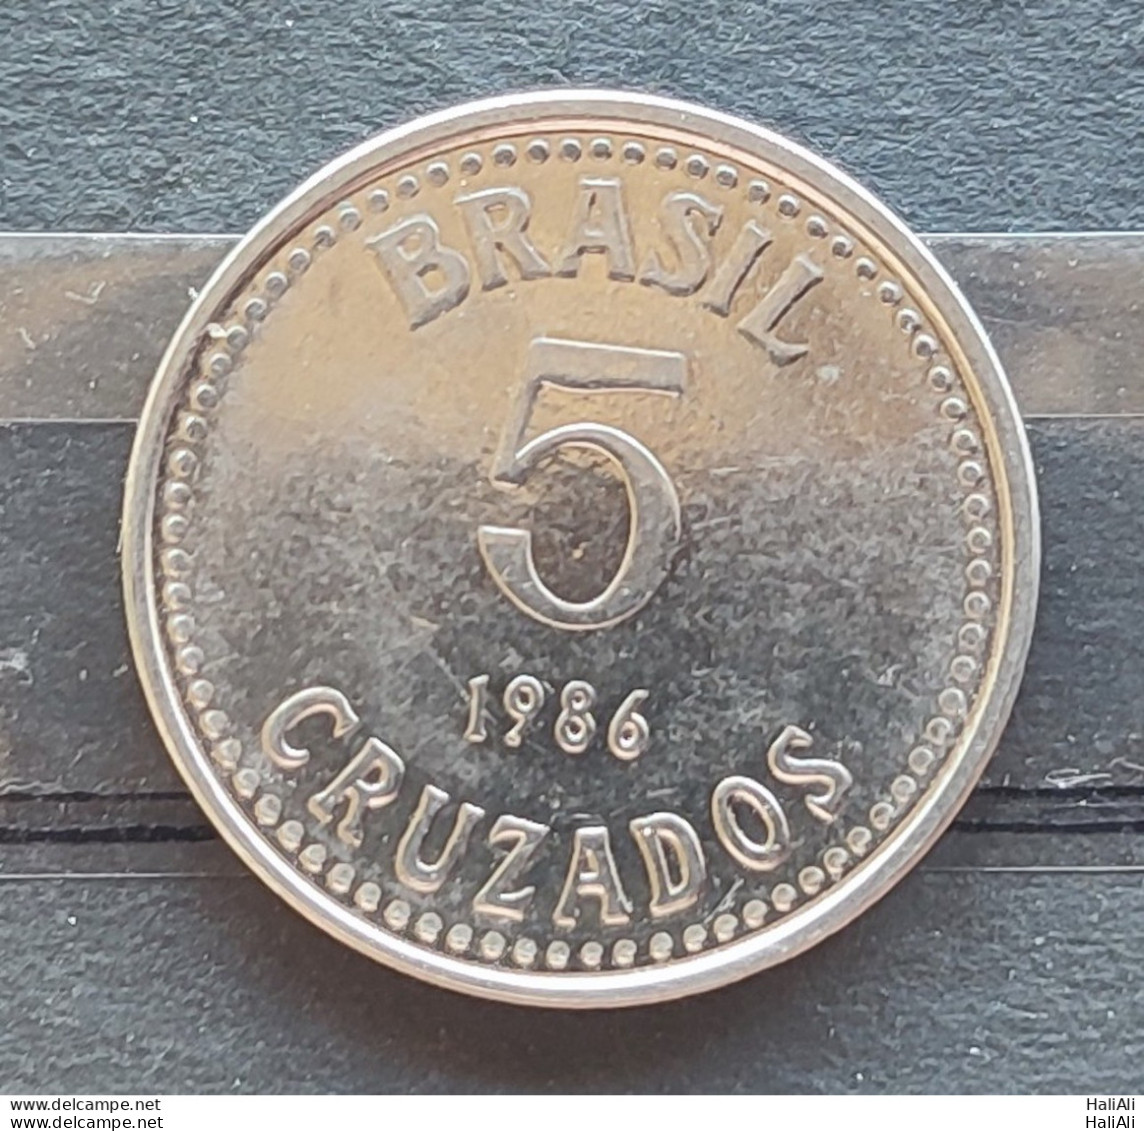 Brazil Coin 1986 5 Cruzado Sob - Viroflay